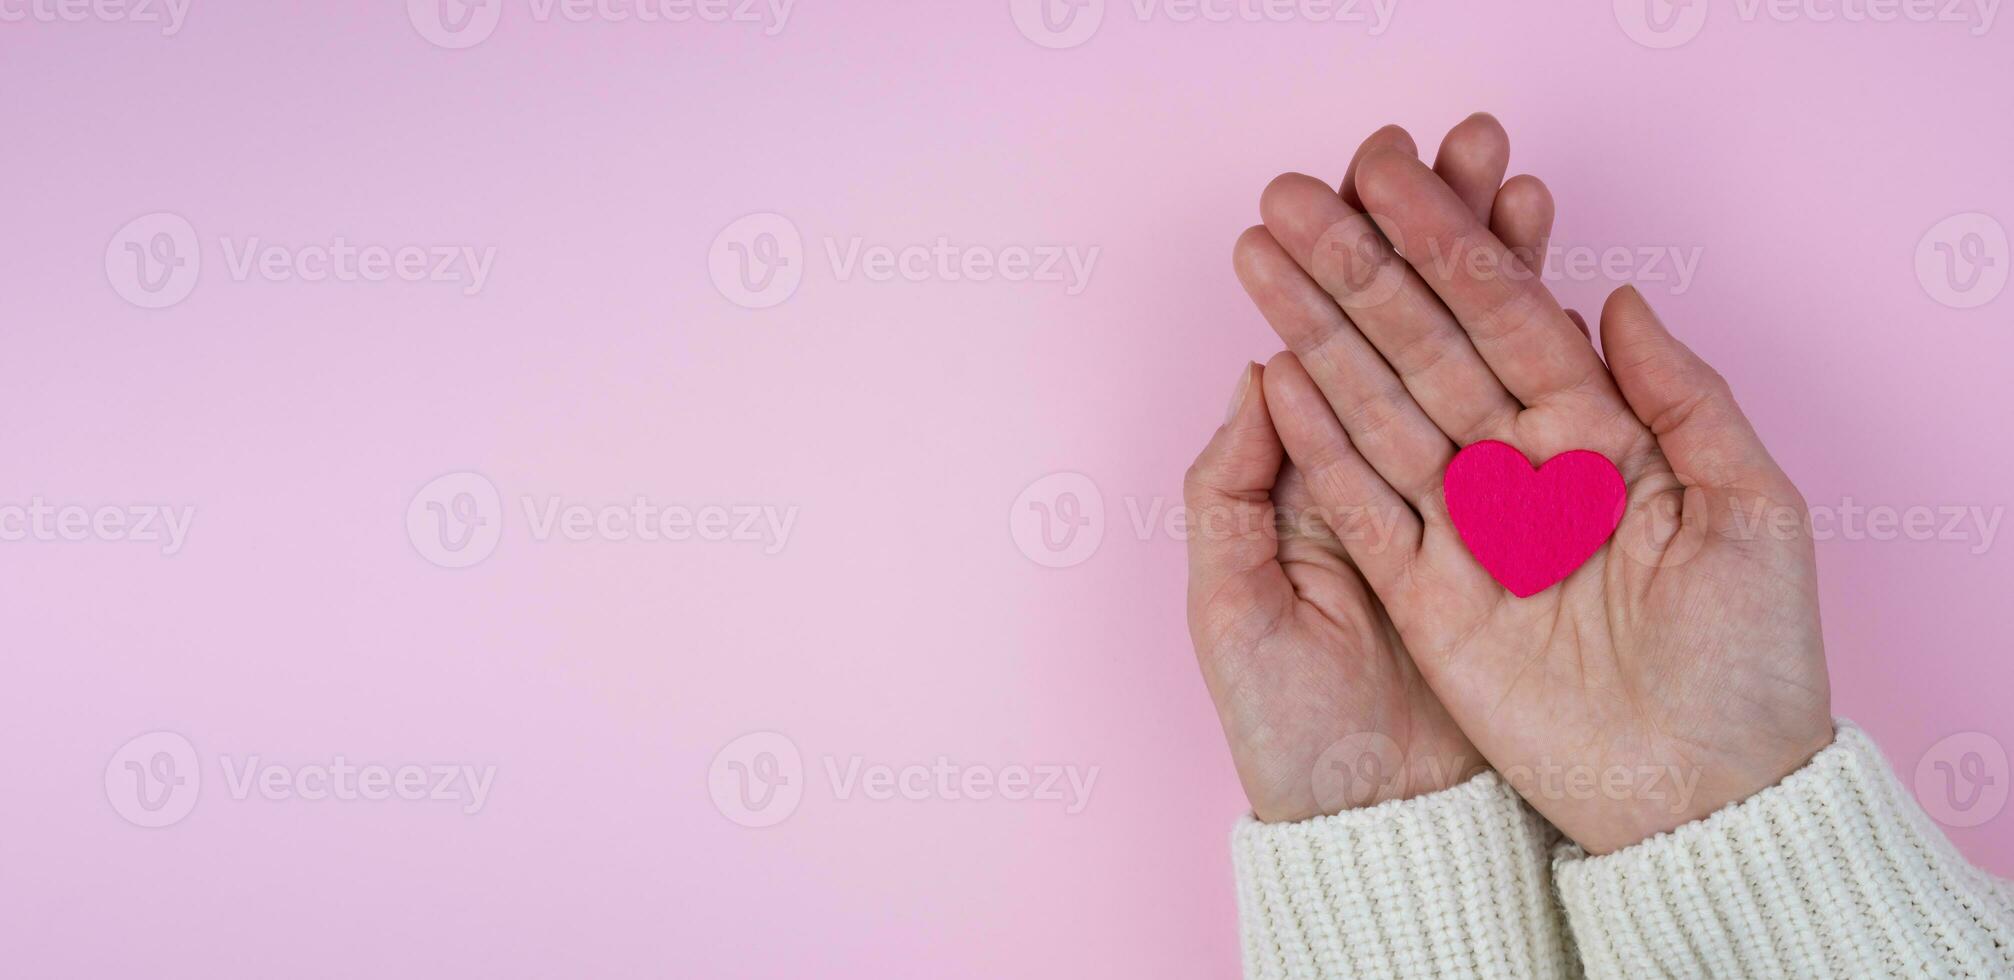 vrouw handen houden een roze hart Aan een roze achtergrond.valentijnsdag dag samenstelling. spandoek. plaats voor tekst. top visie. selectief focus. foto